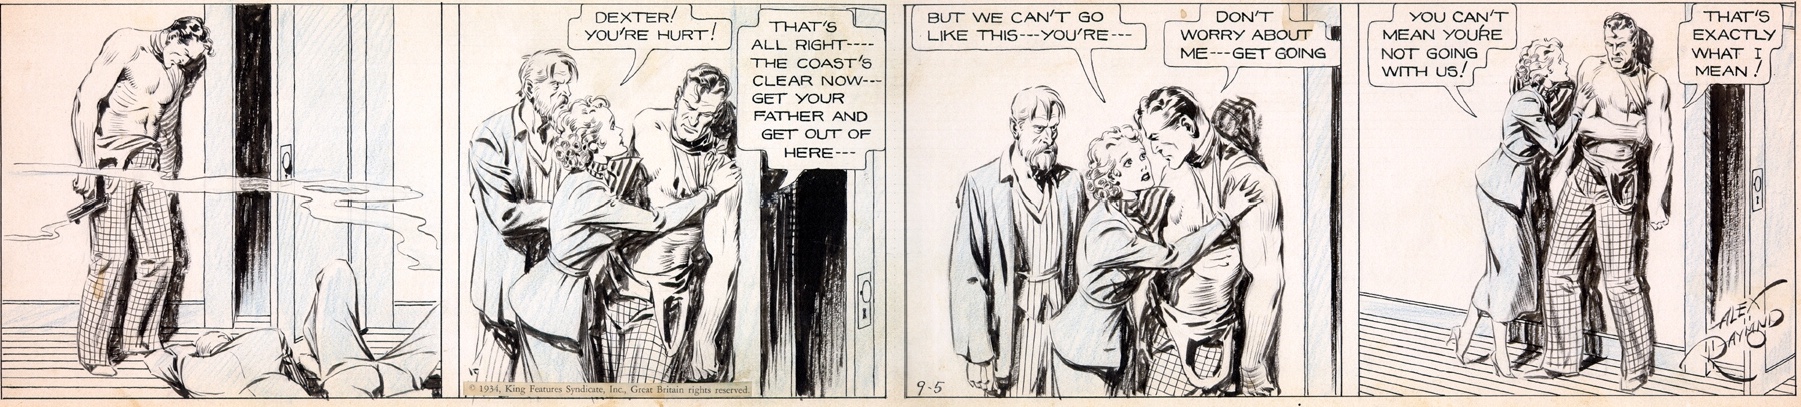 Agent X9 kallade sig Dexter i den första historien, här en stripp av Alex Raymond från 5 september 1934